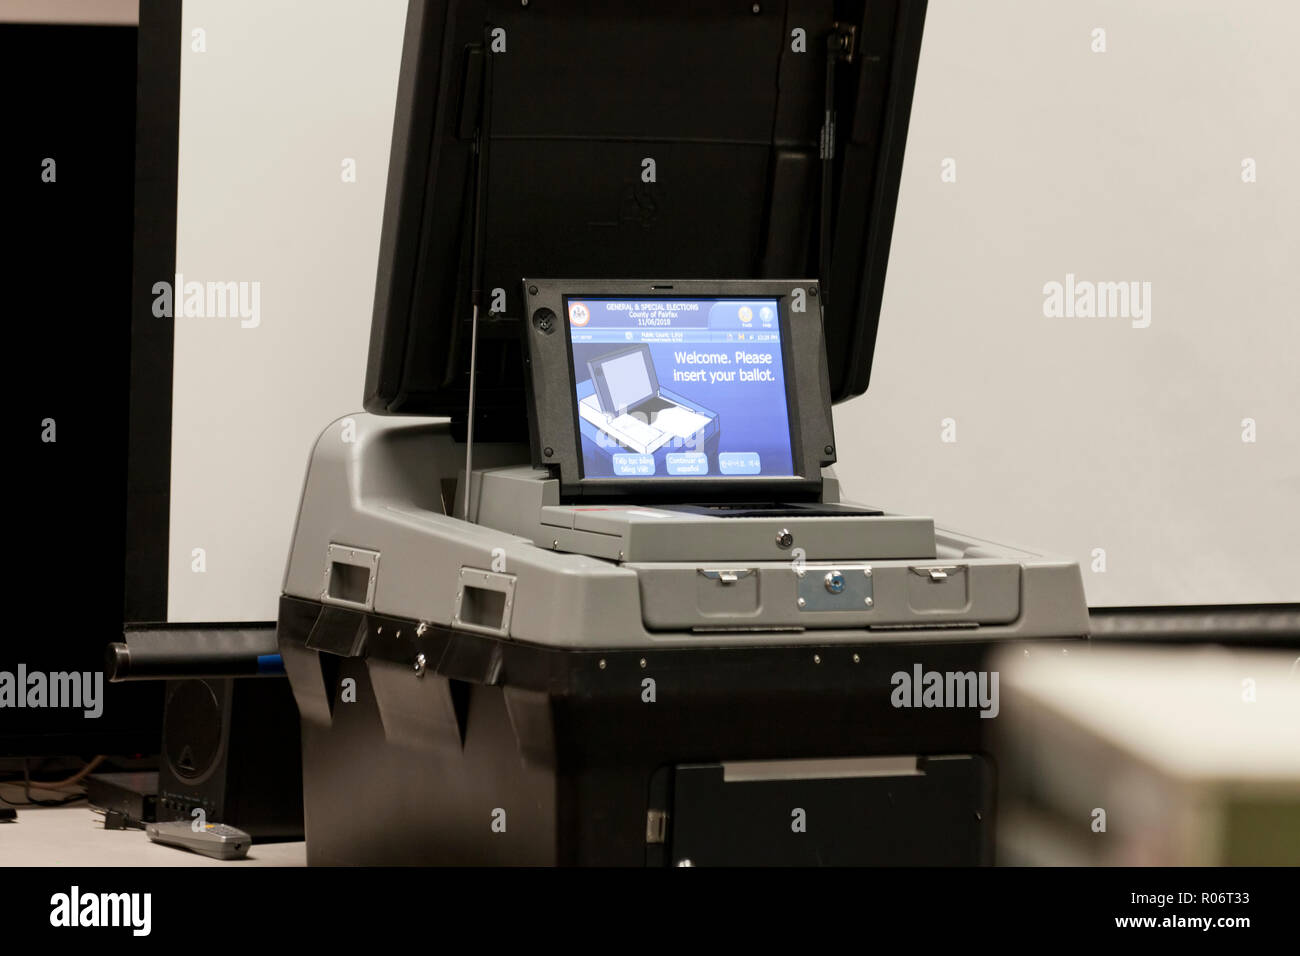 DS200 Precinct scanner & tabulatore scansione ottica del sistema di voto in un luogo di polling - Fairfax County, Virginia, Stati Uniti d'America Foto Stock